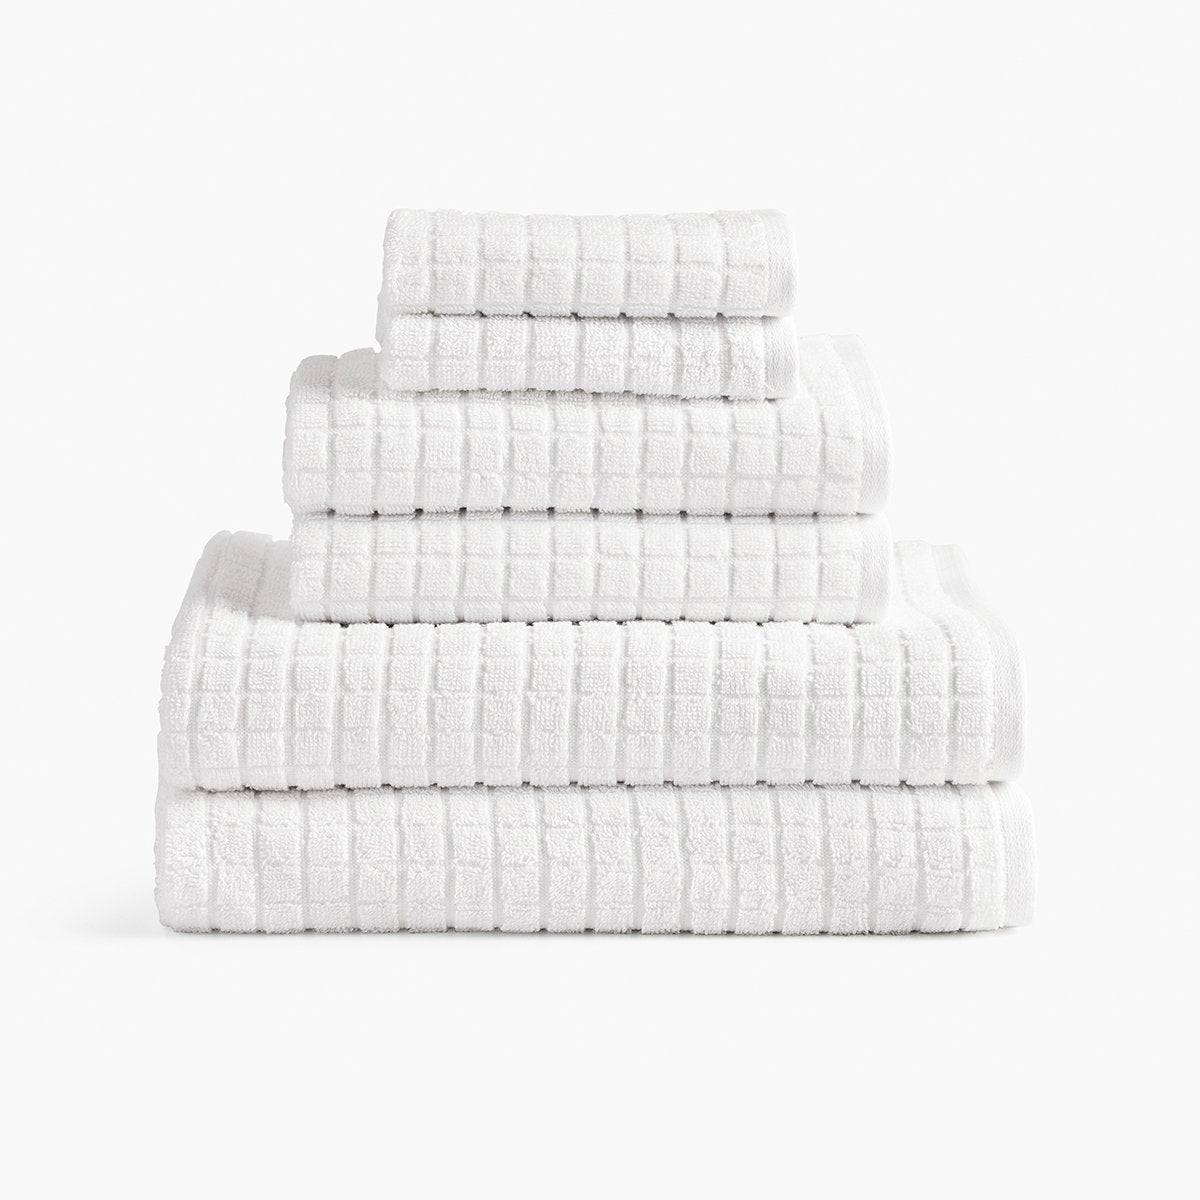 https://cdn.shopify.com/s/files/1/0557/8840/4900/products/organic-cotton-hemp-towels-white-set_1200x.jpg?v=1684787482